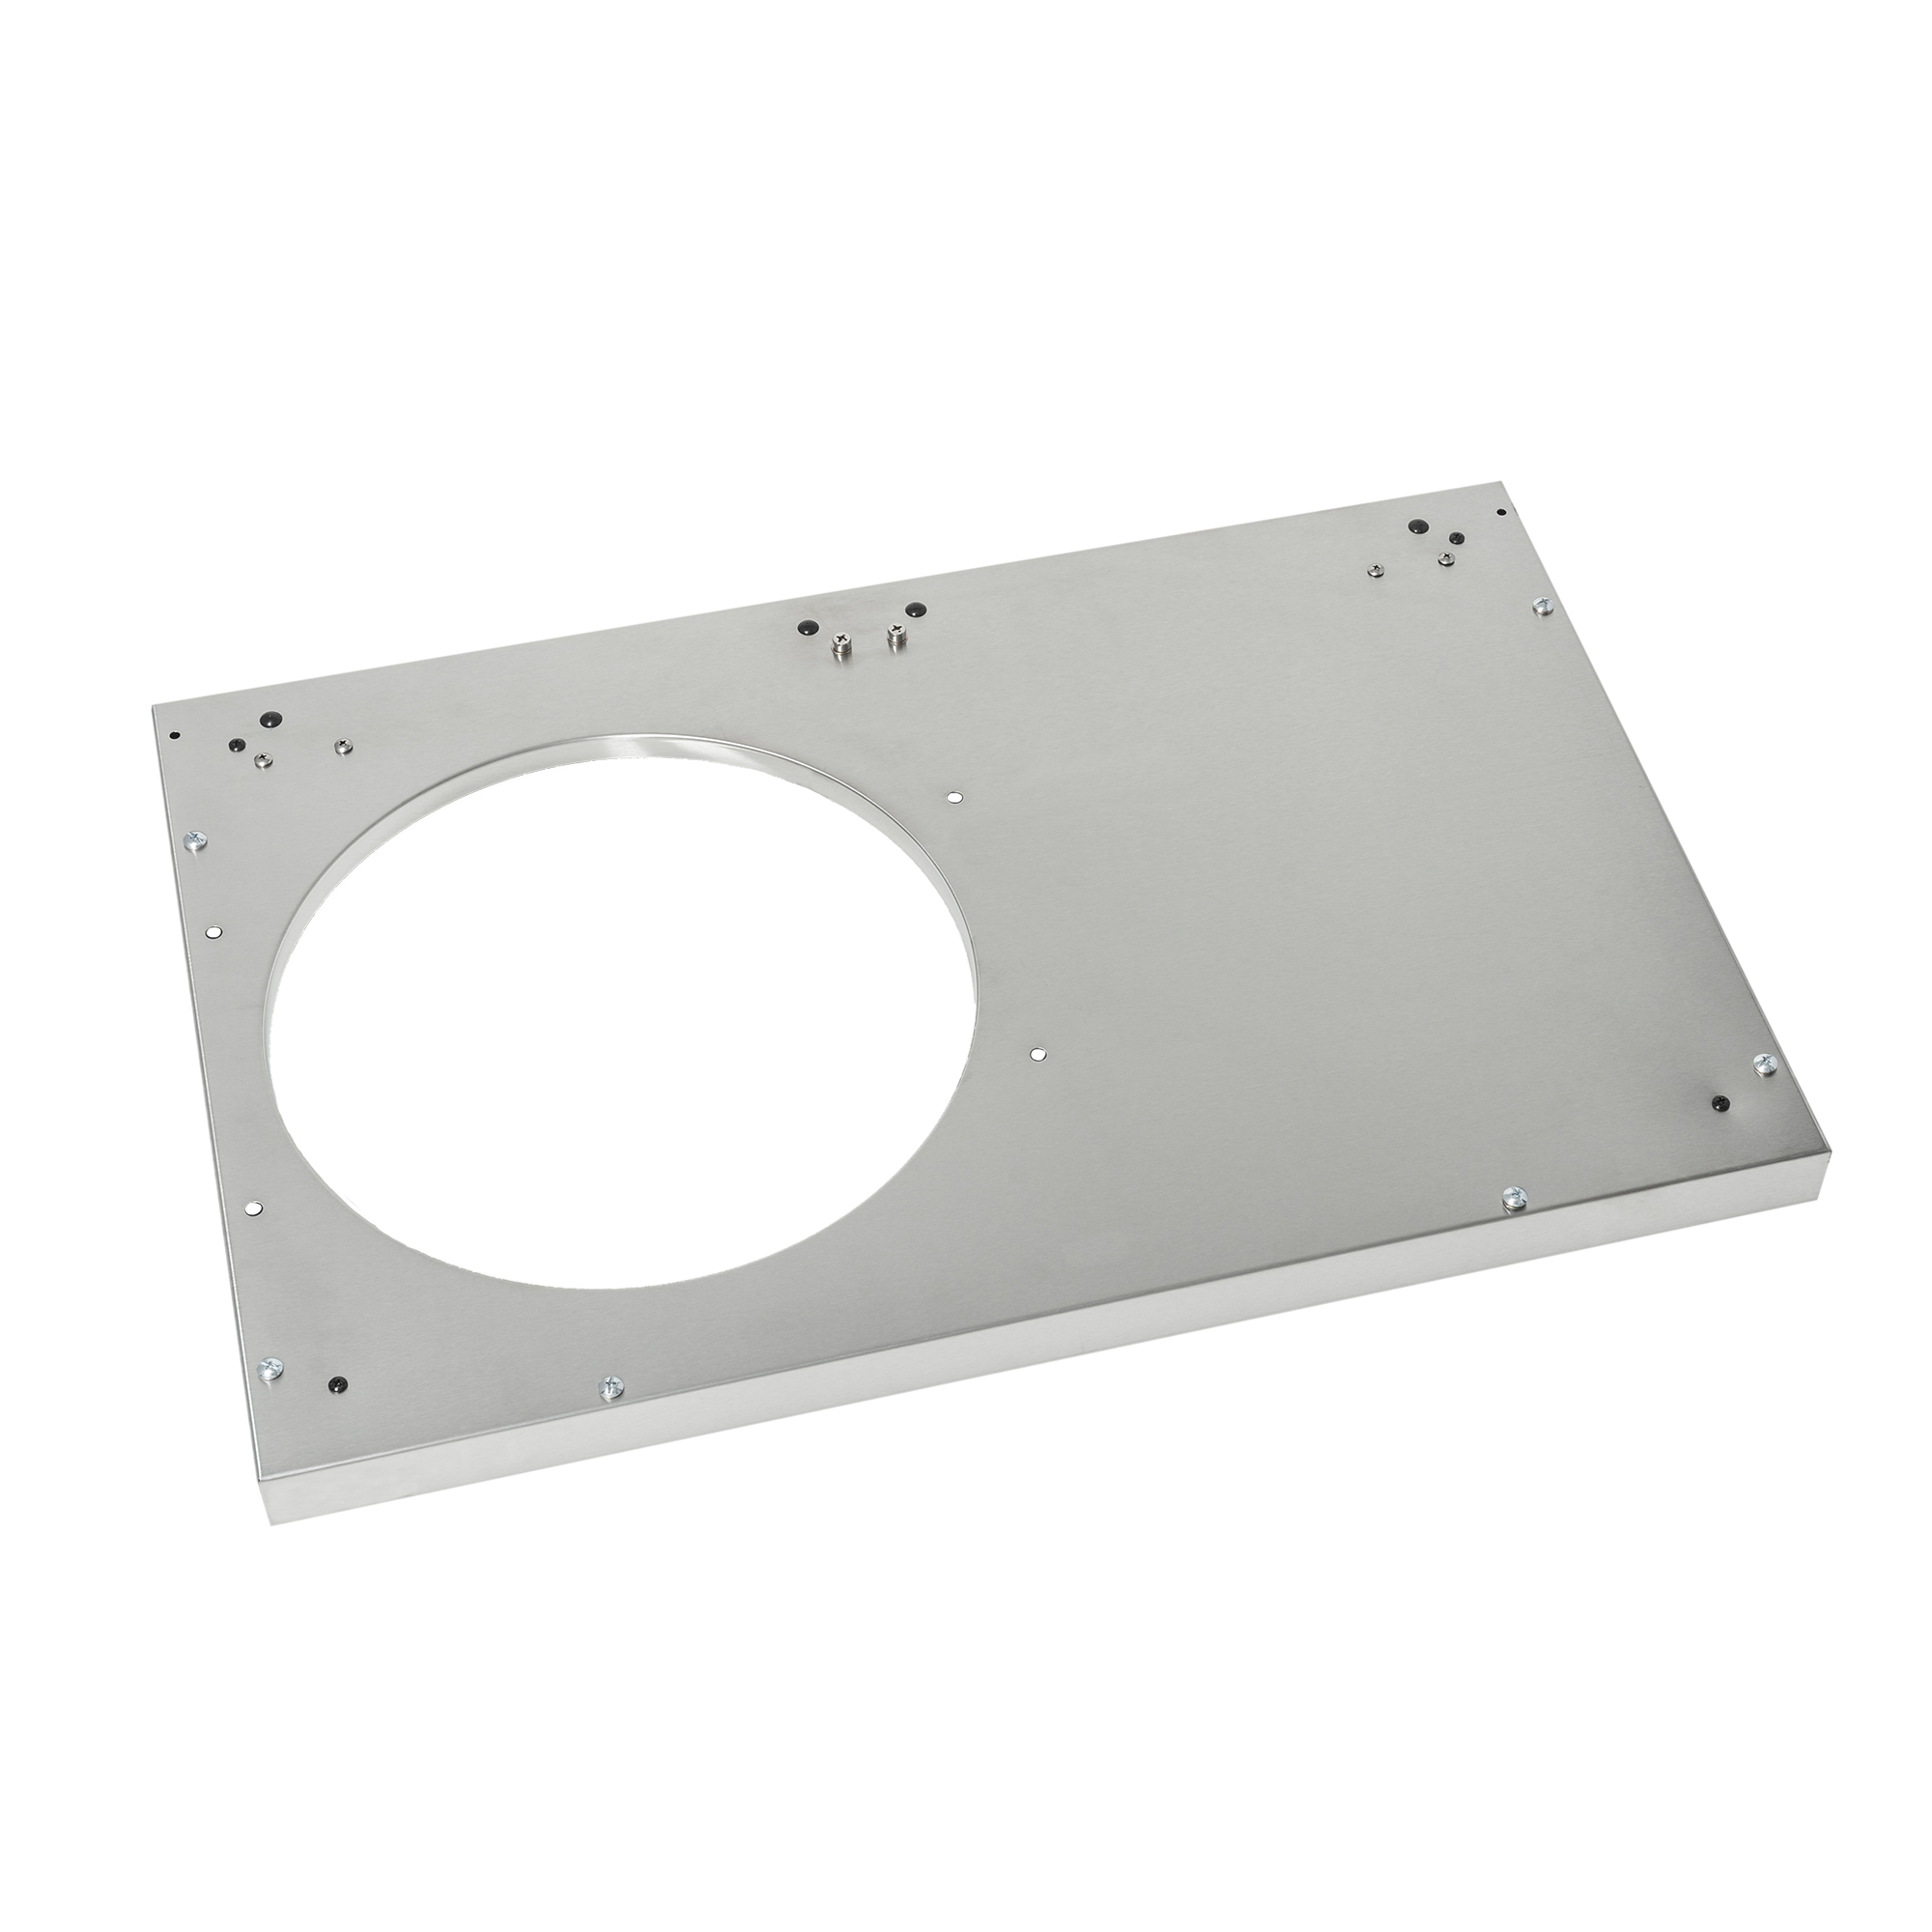 Cabinet bottom panel Artiso G4-SB stainless steel